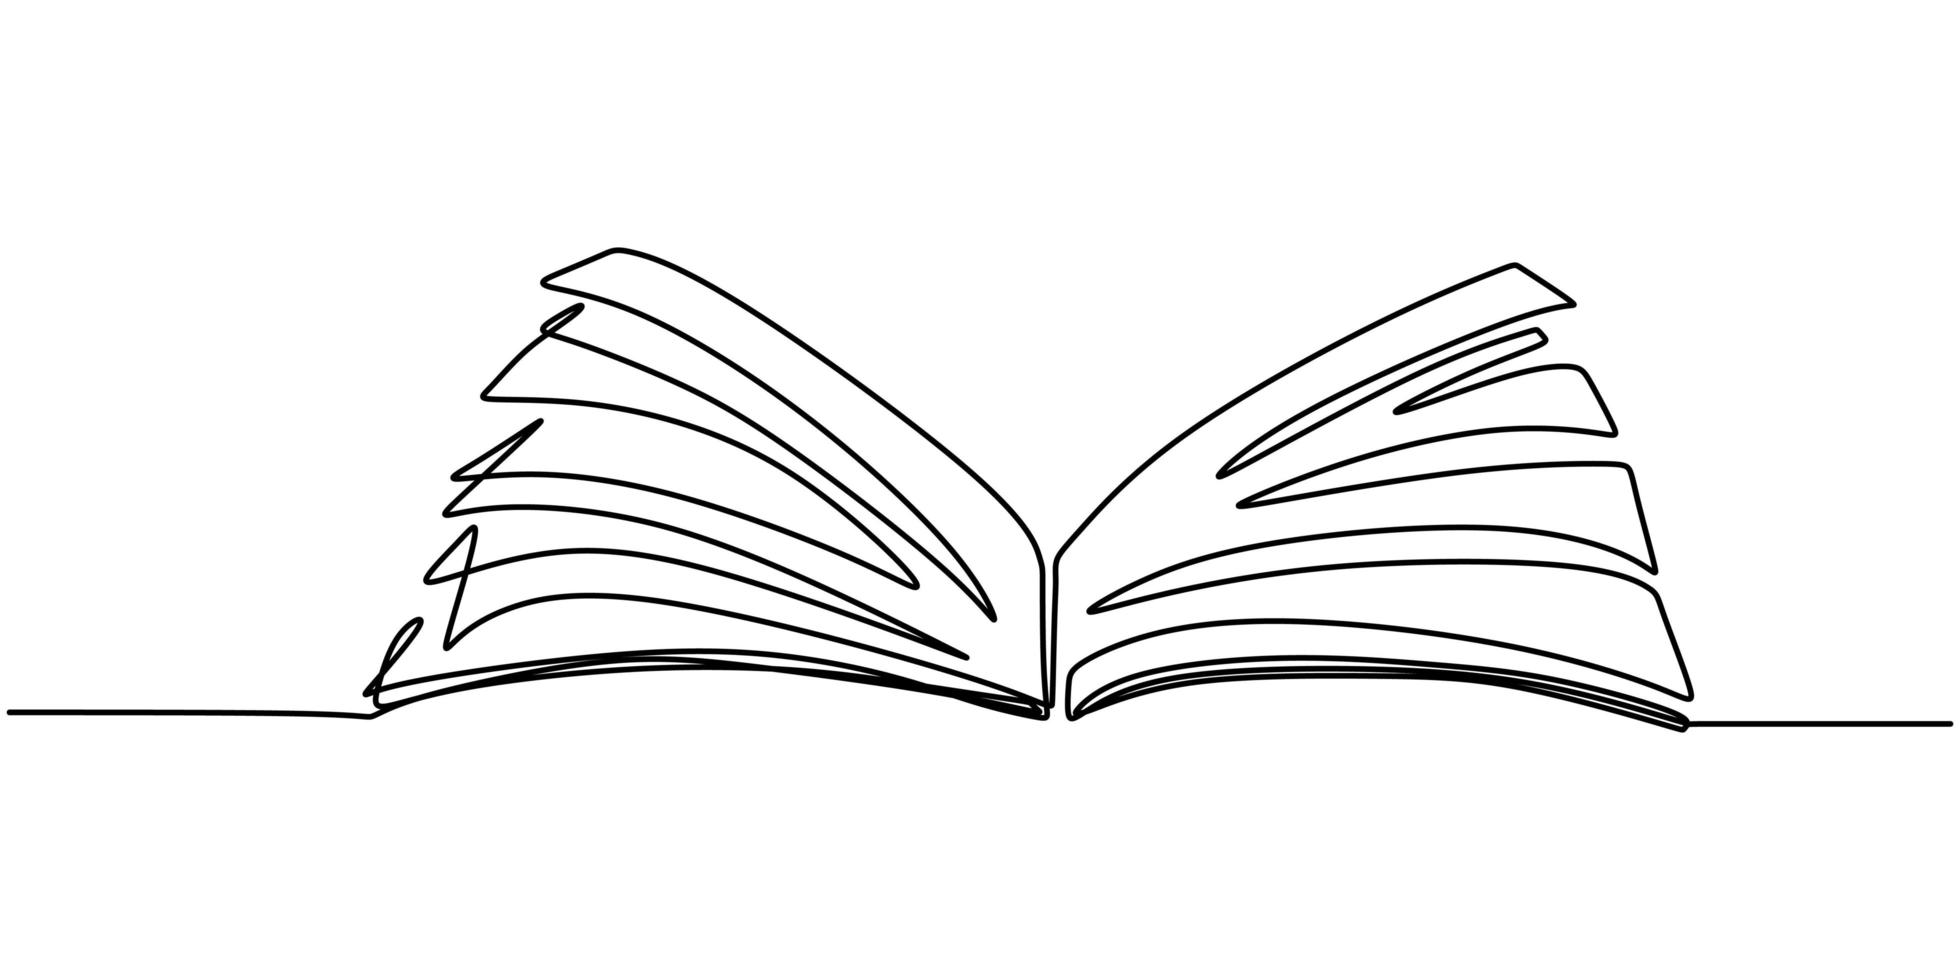 um desenho de linha, livro aberto. ilustração do objeto vetorial, design de esboço desenhado de mão minimalismo. conceito de estudo e conhecimento. vetor